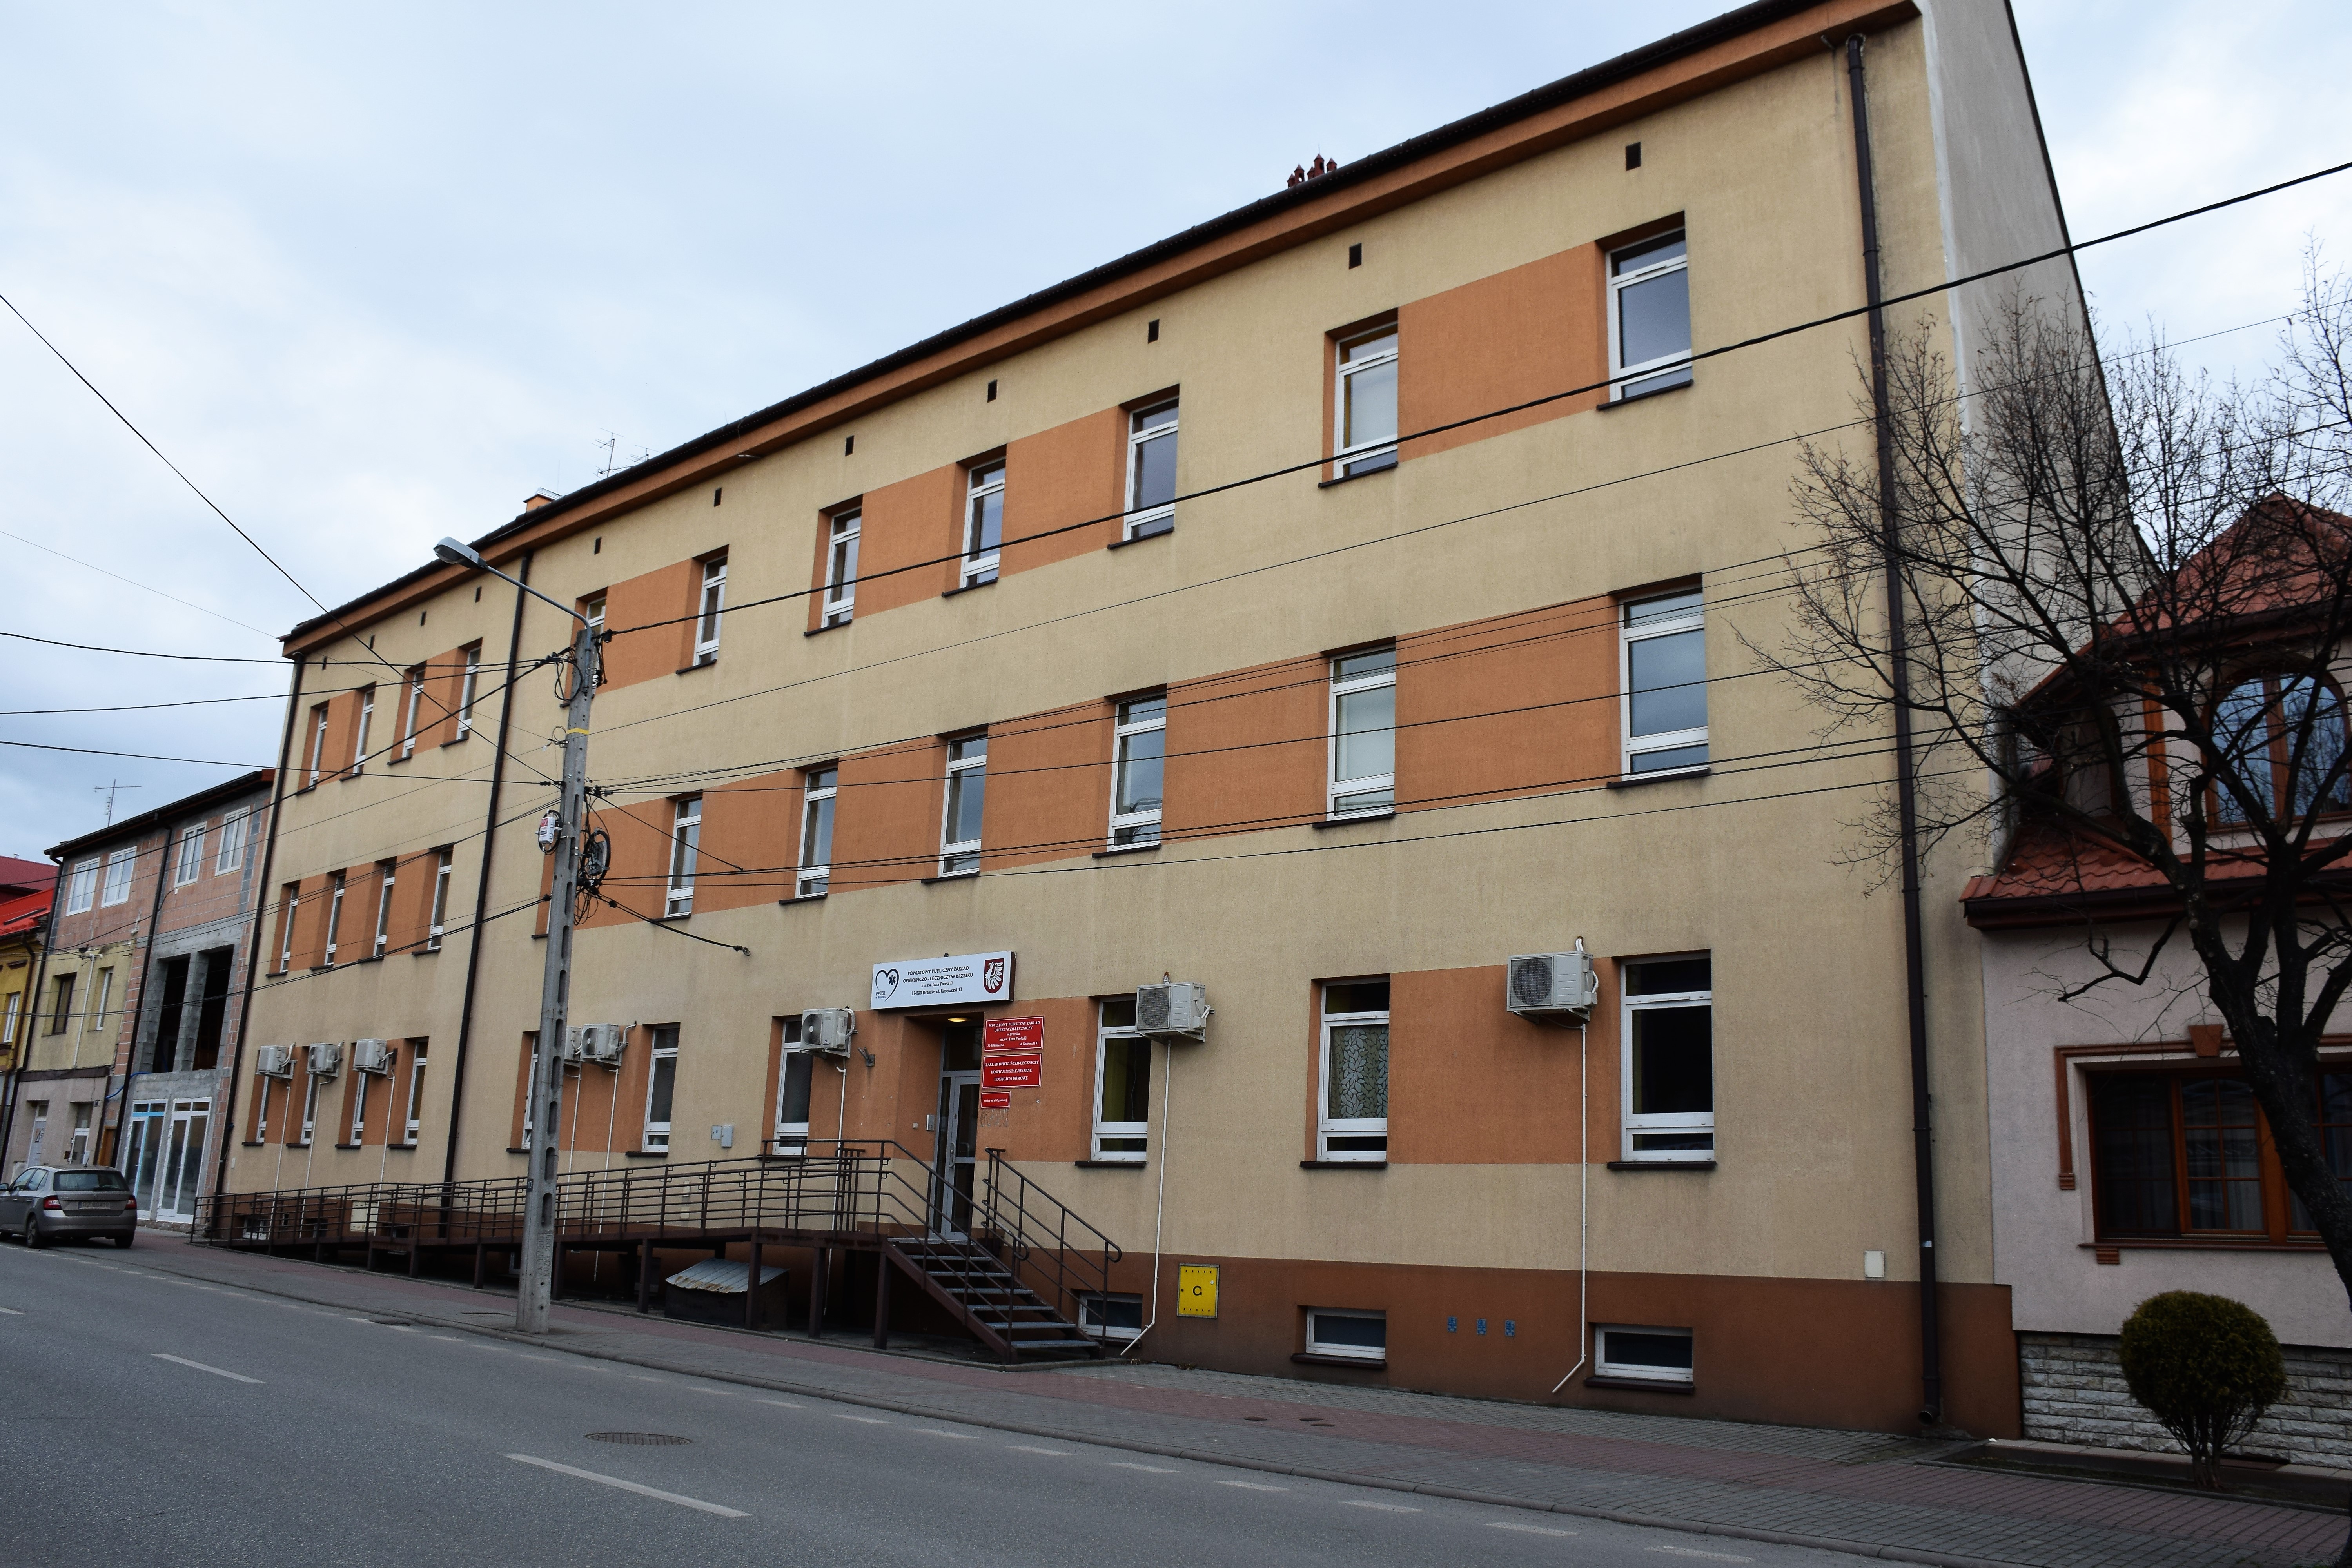 Budynek główny i administracyjny PPZOL przy ul. Kościuszki 33 przed termomodernizacją